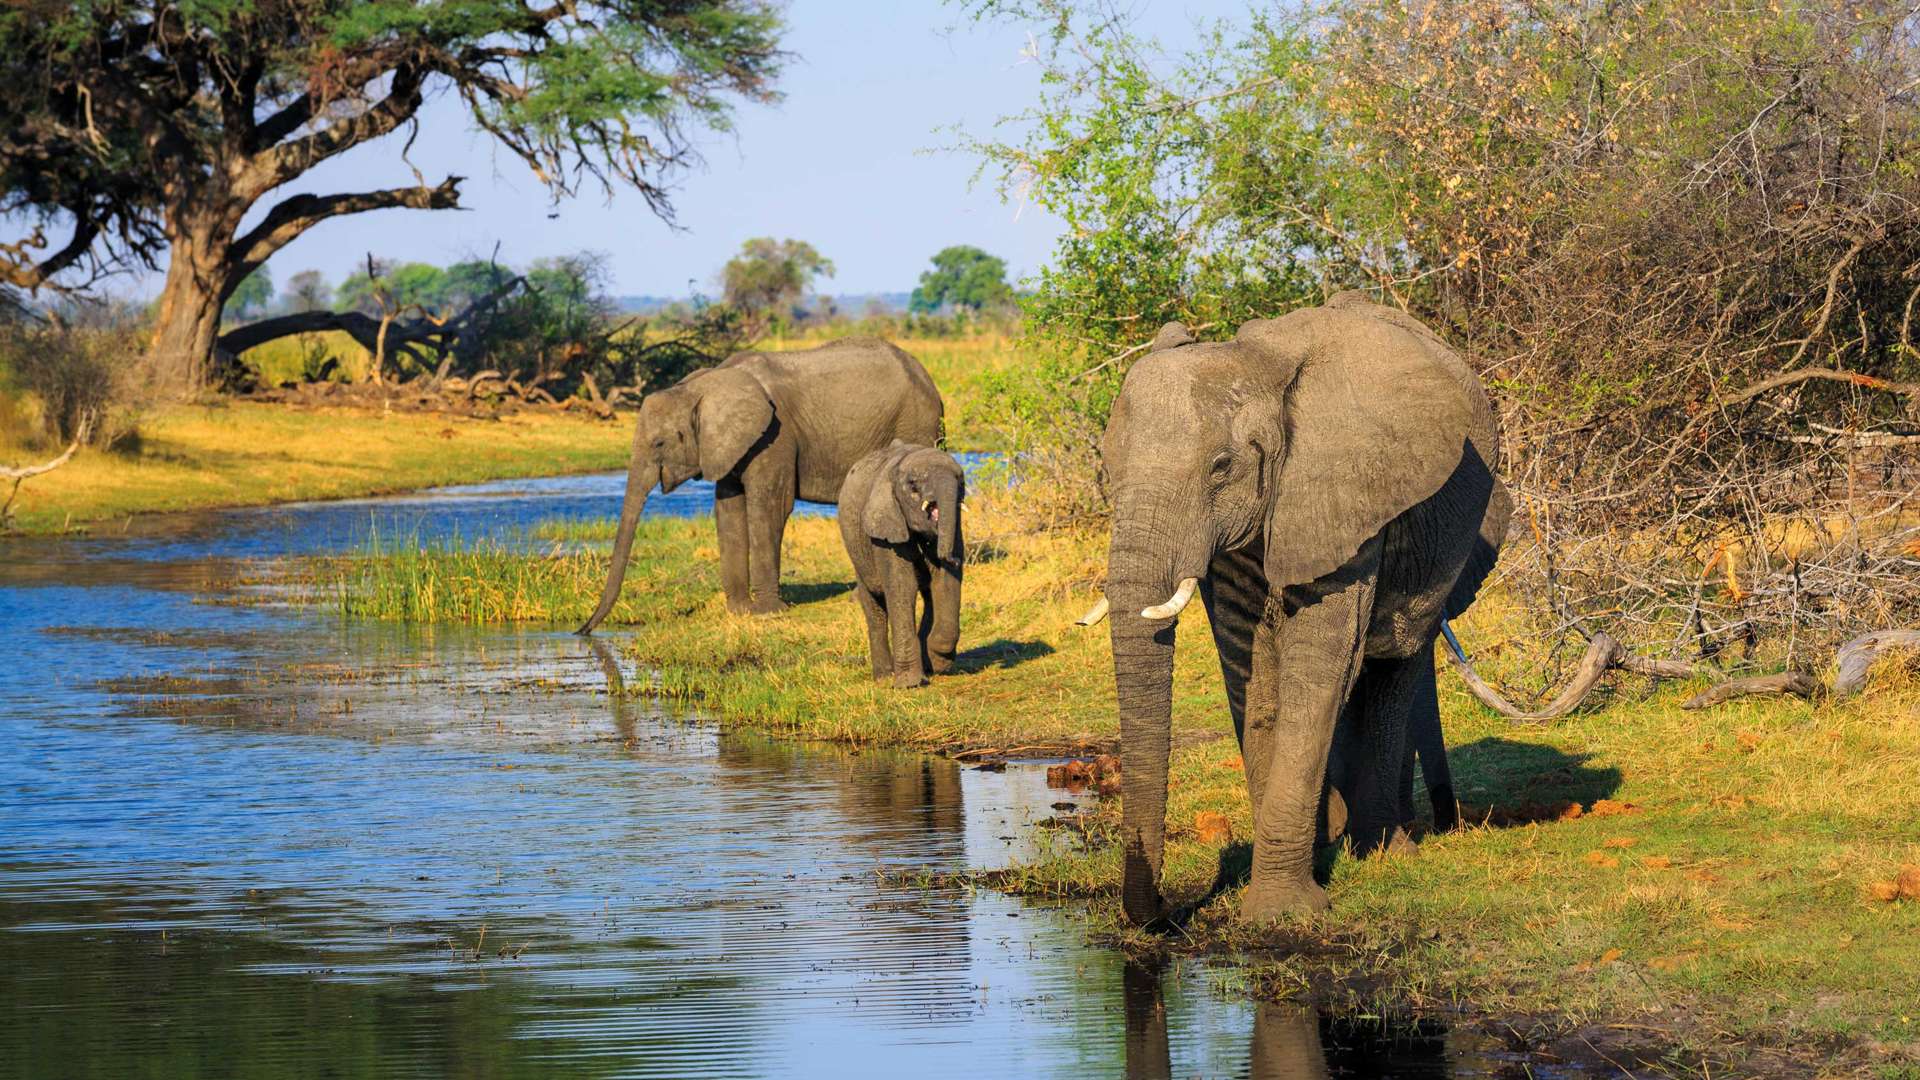 Elephants at Waterhole, Mudumu National Park, Namibia